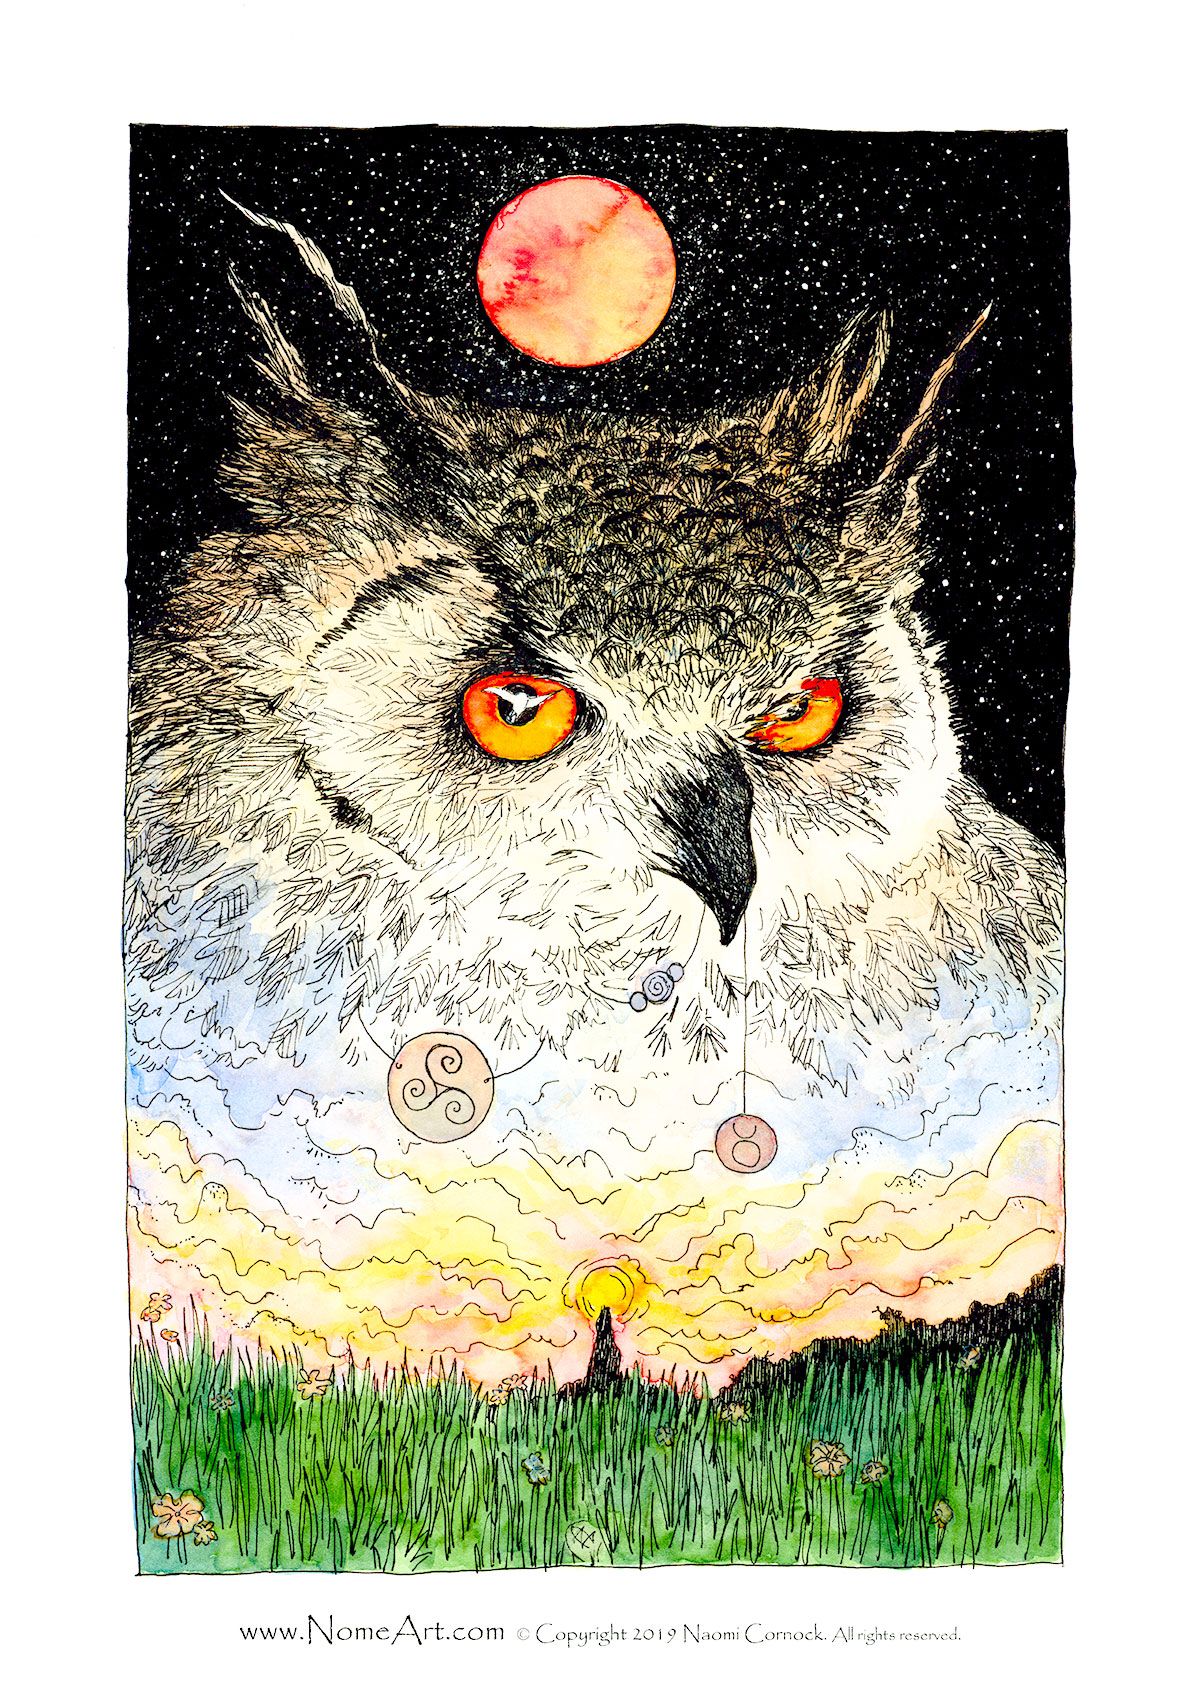 Eagle Owl Blood Moon